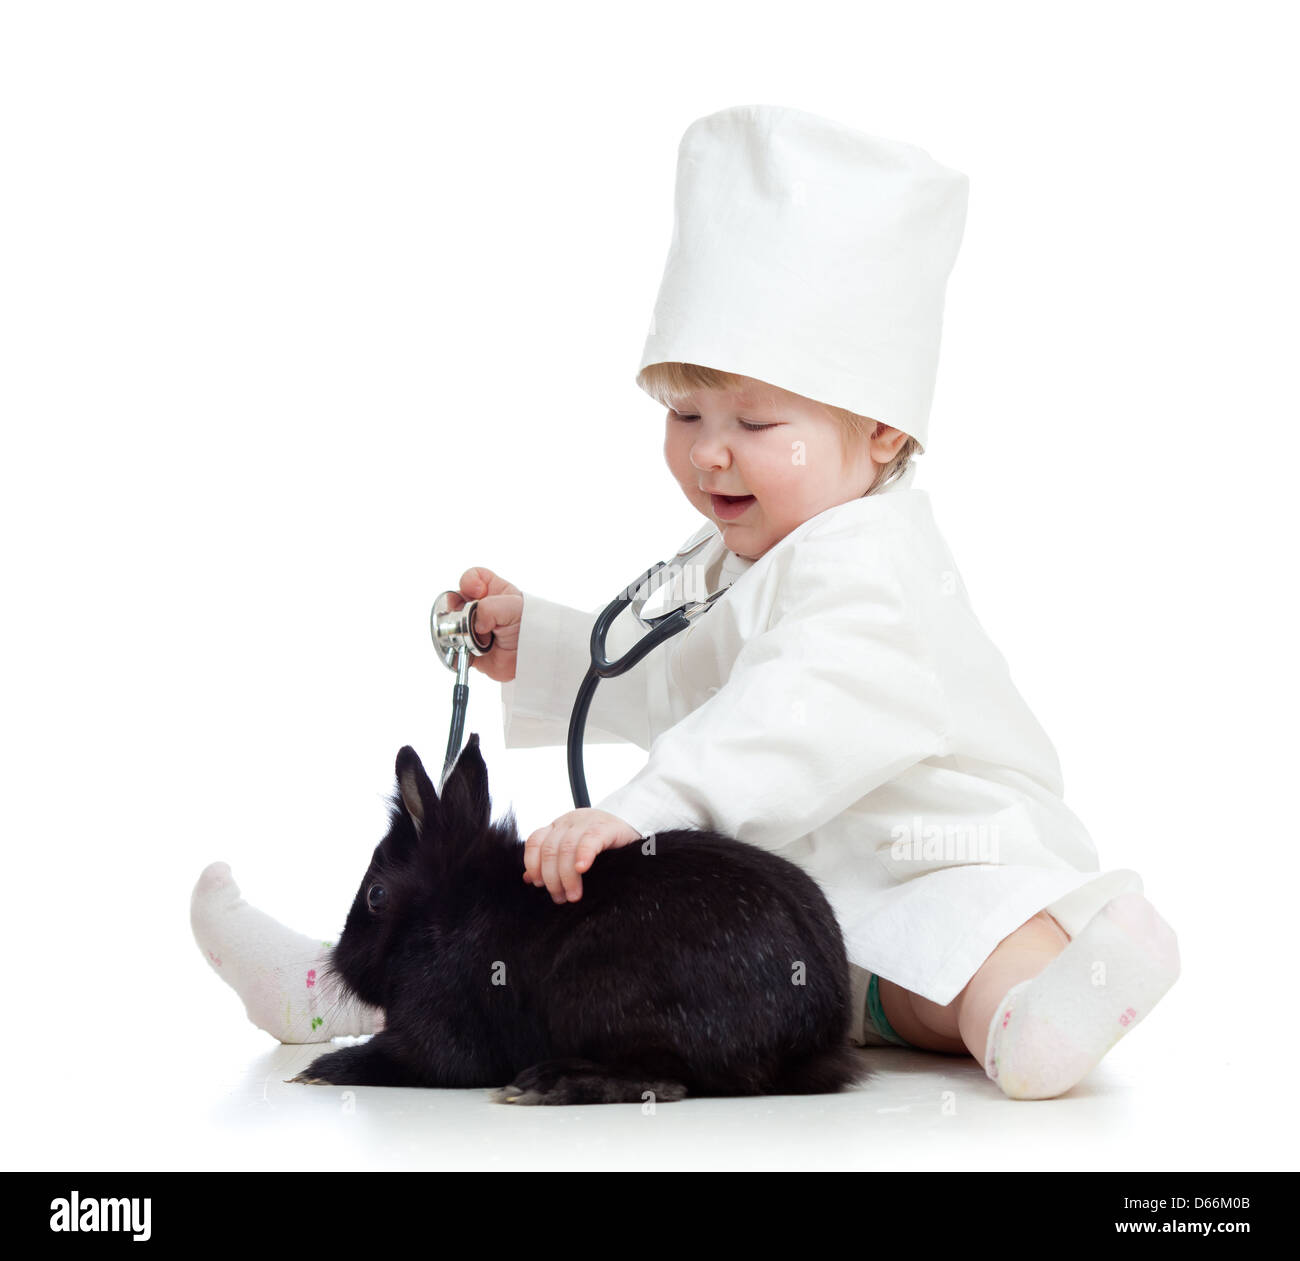 Adorable enfant avec des vêtements de médecin. Girl joue avec le pet bunny Banque D'Images